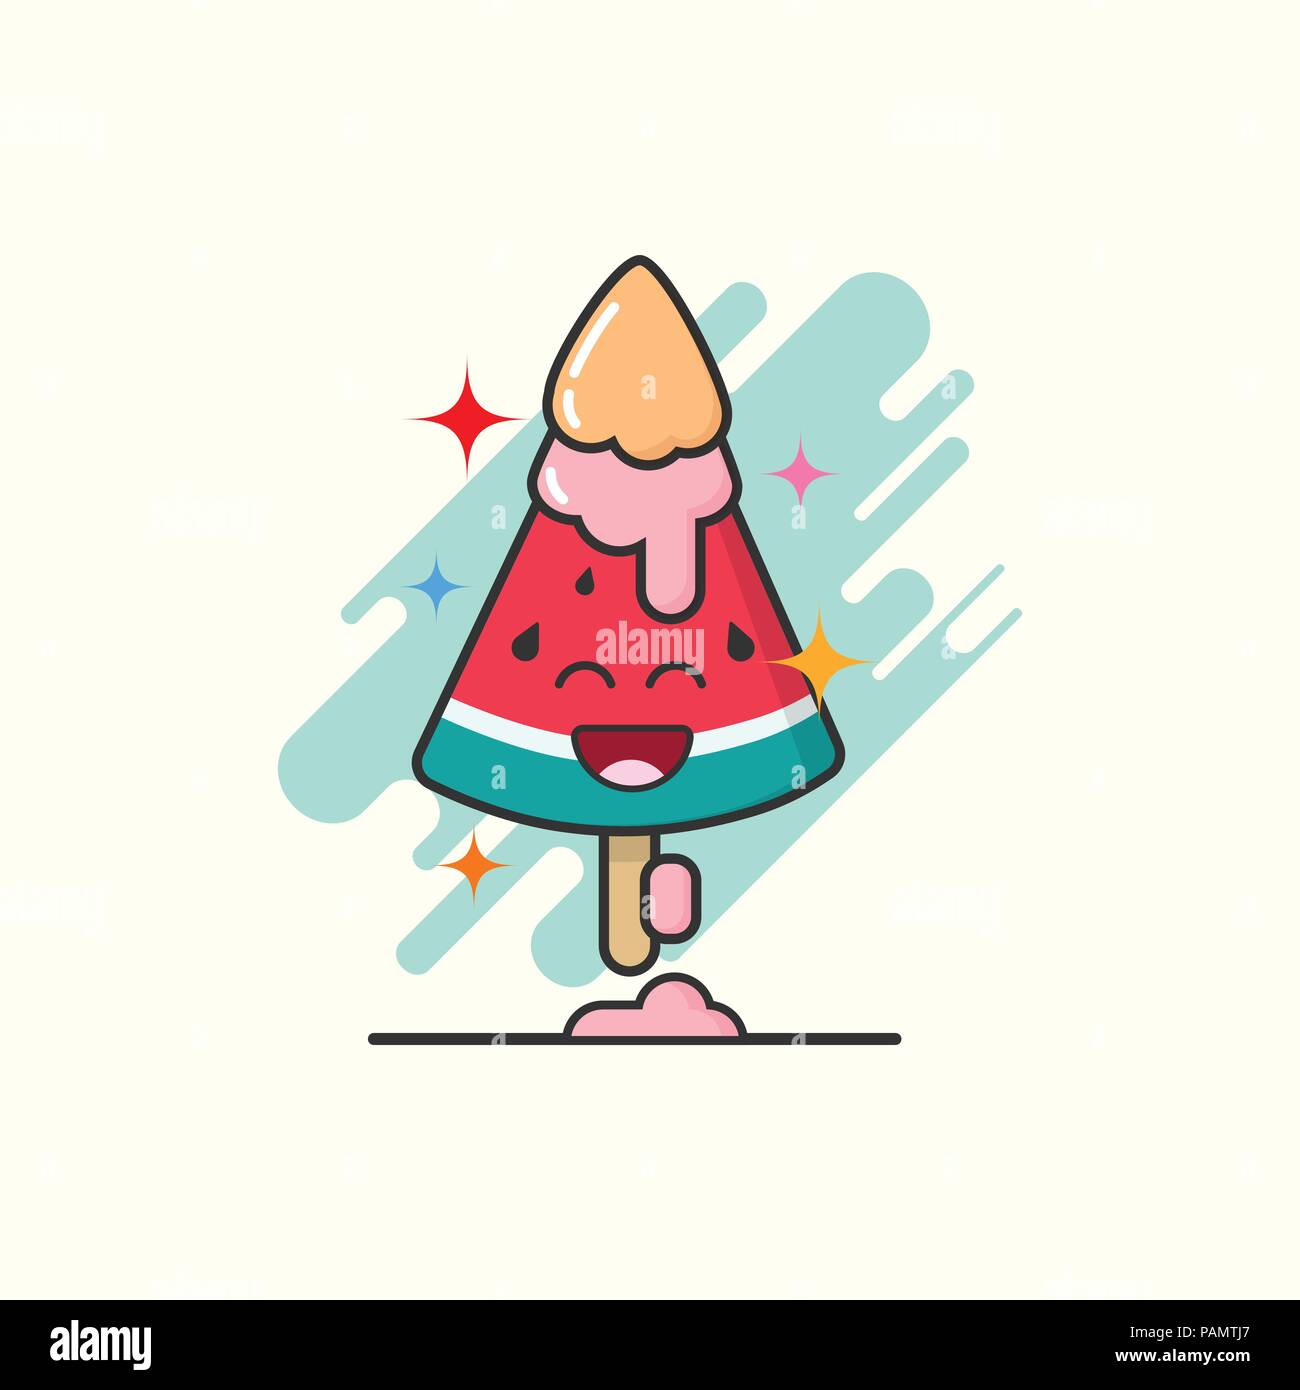 Cute Cartoon des Eis bar in Wassermelone Form auf weißem Hintergrund mit Emotion happy Face. Eis veranschaulicht Hintergrund. Kreative pastell Stock Vektor